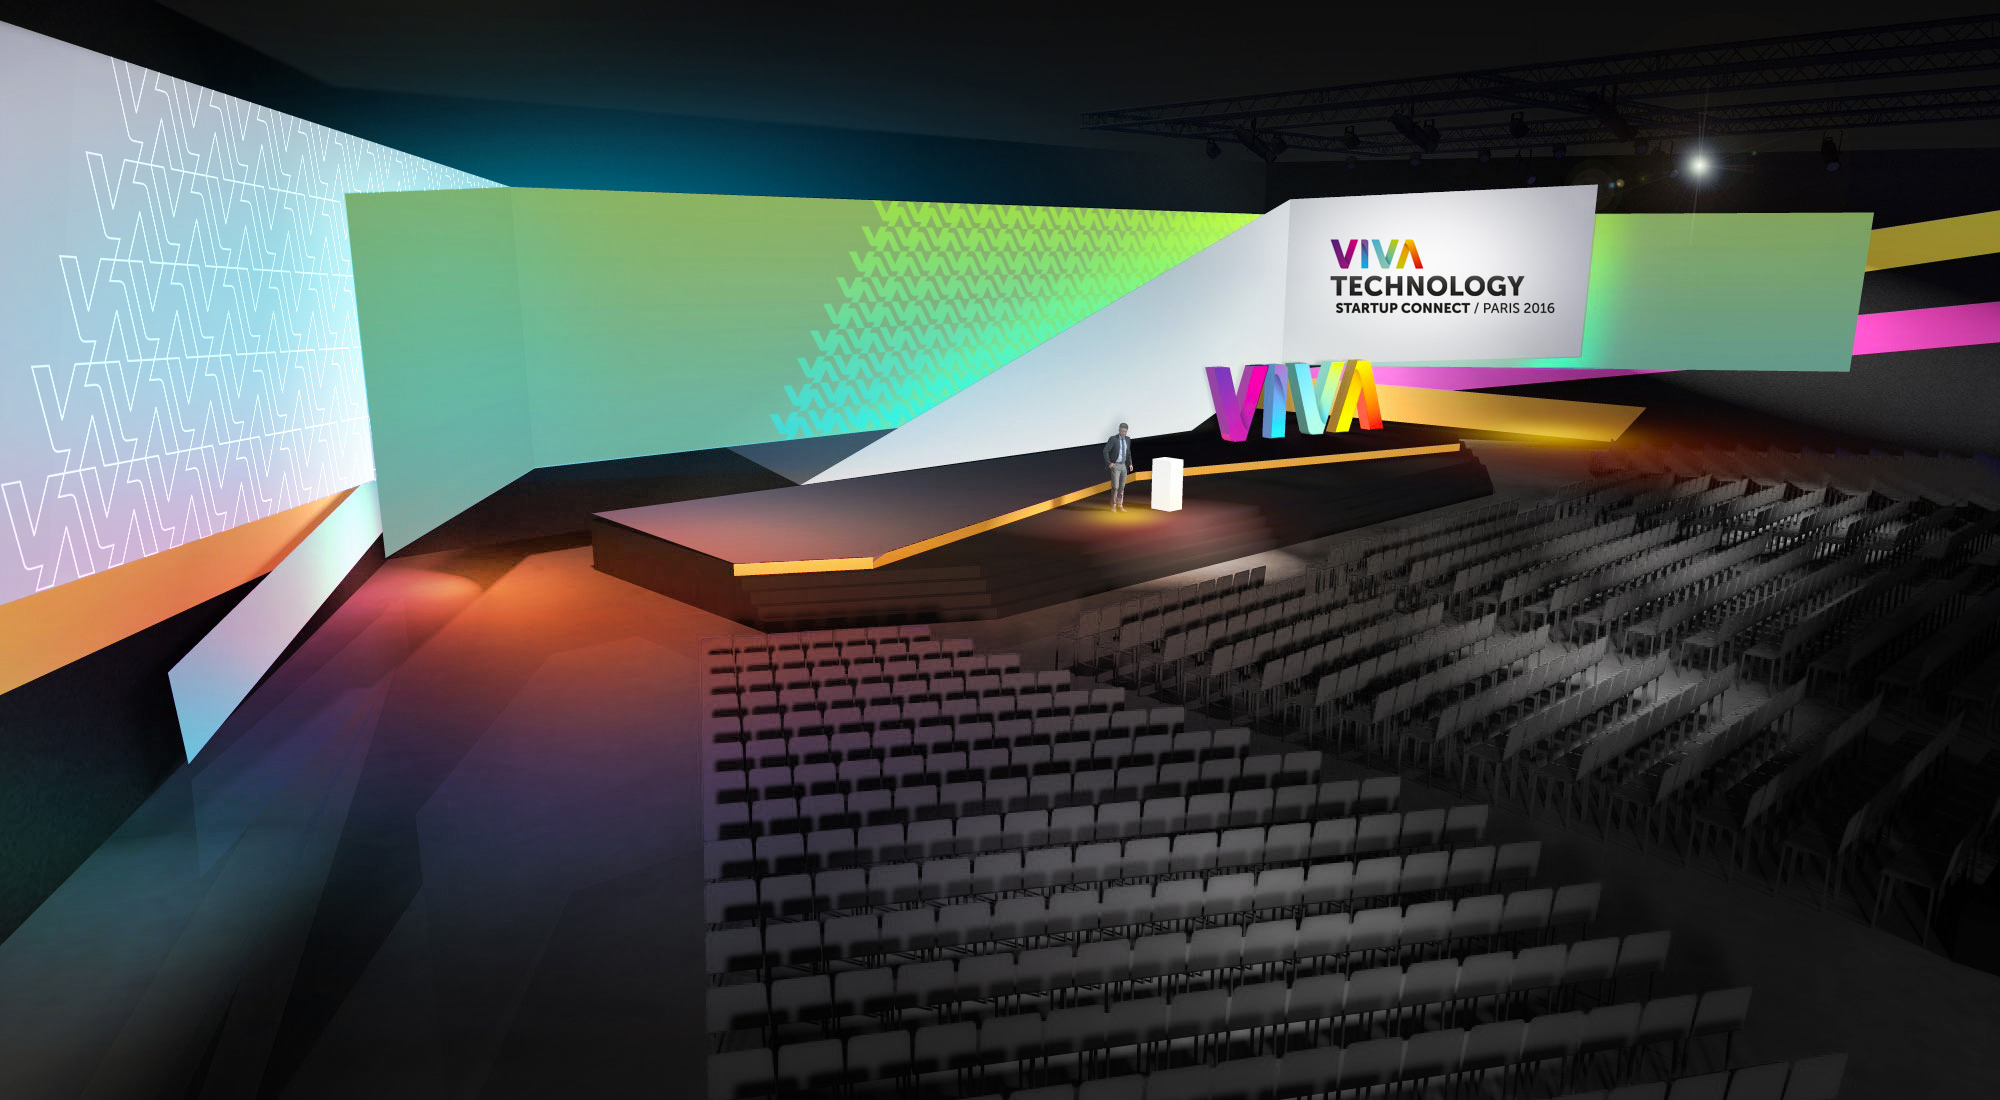 Viva Technology: innovation at the heart of Krug - LVMH